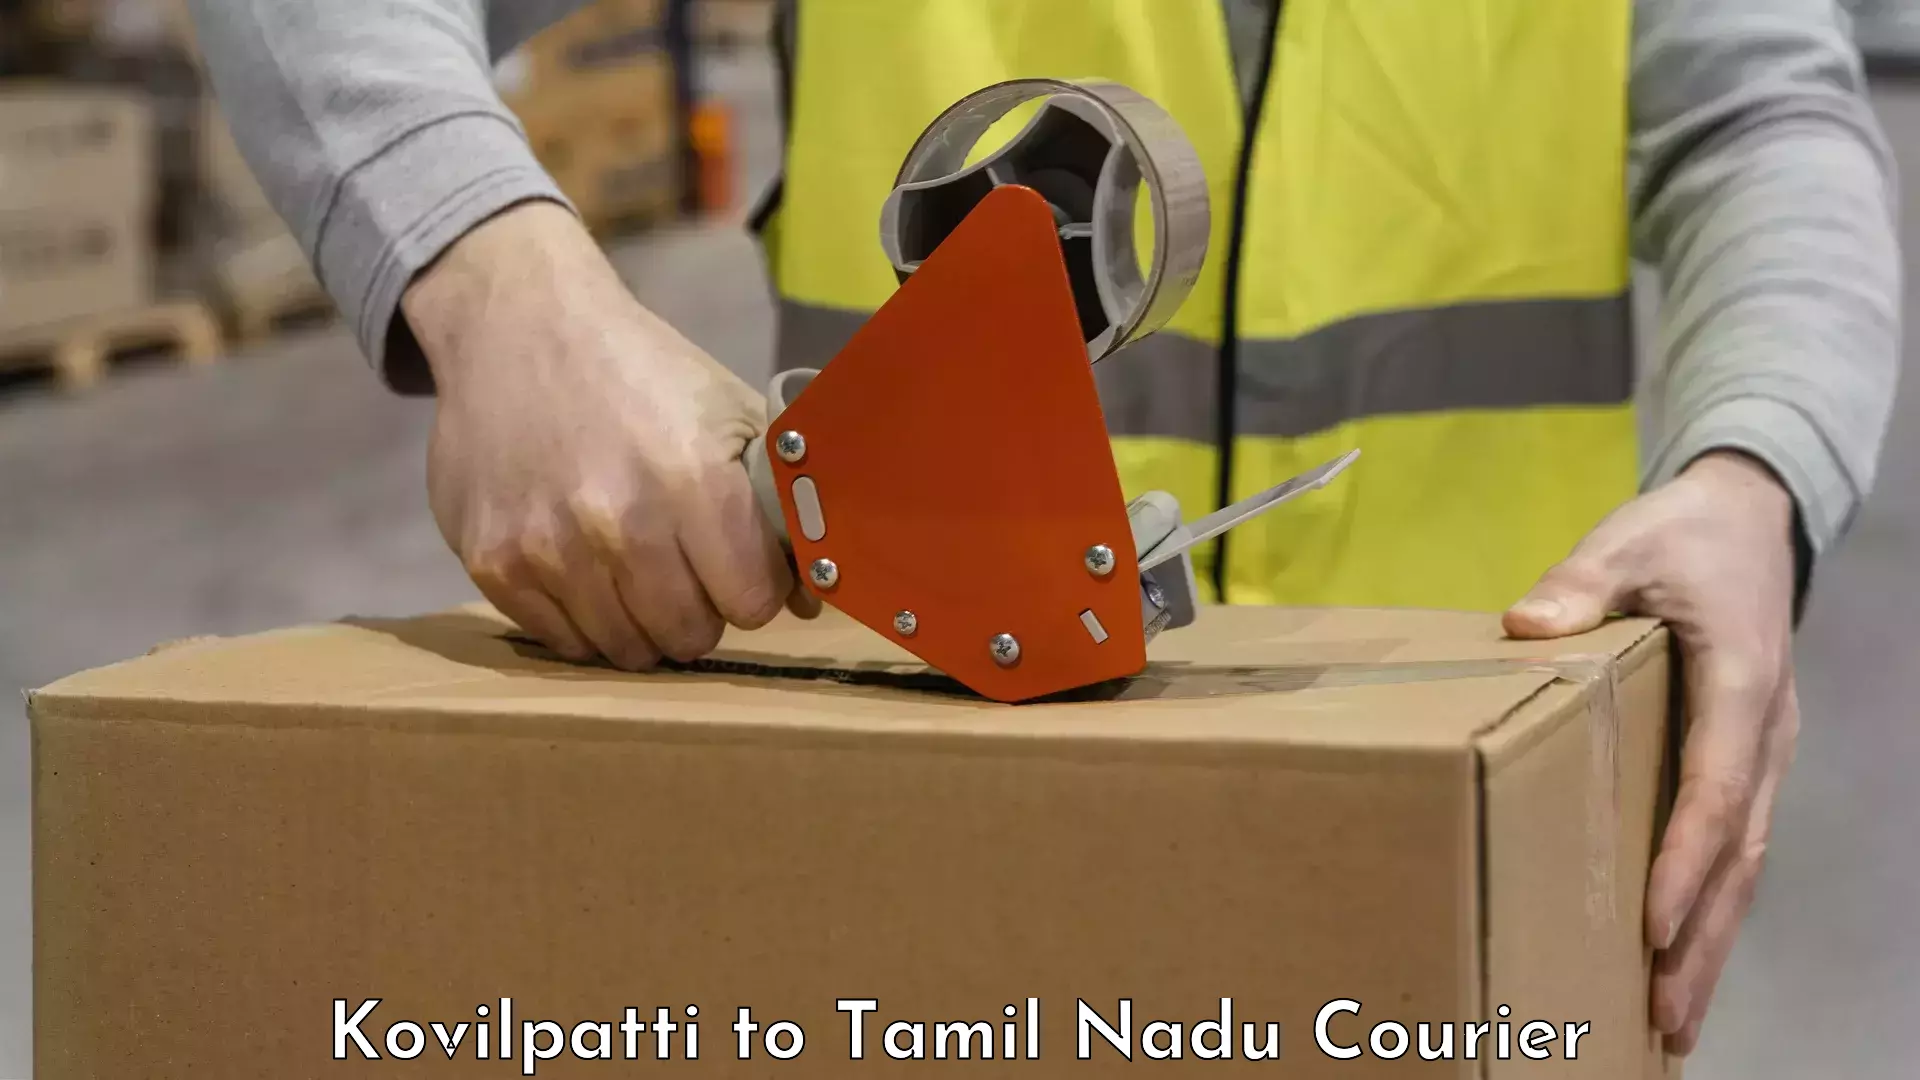 Urgent luggage shipment Kovilpatti to Tamil Nadu